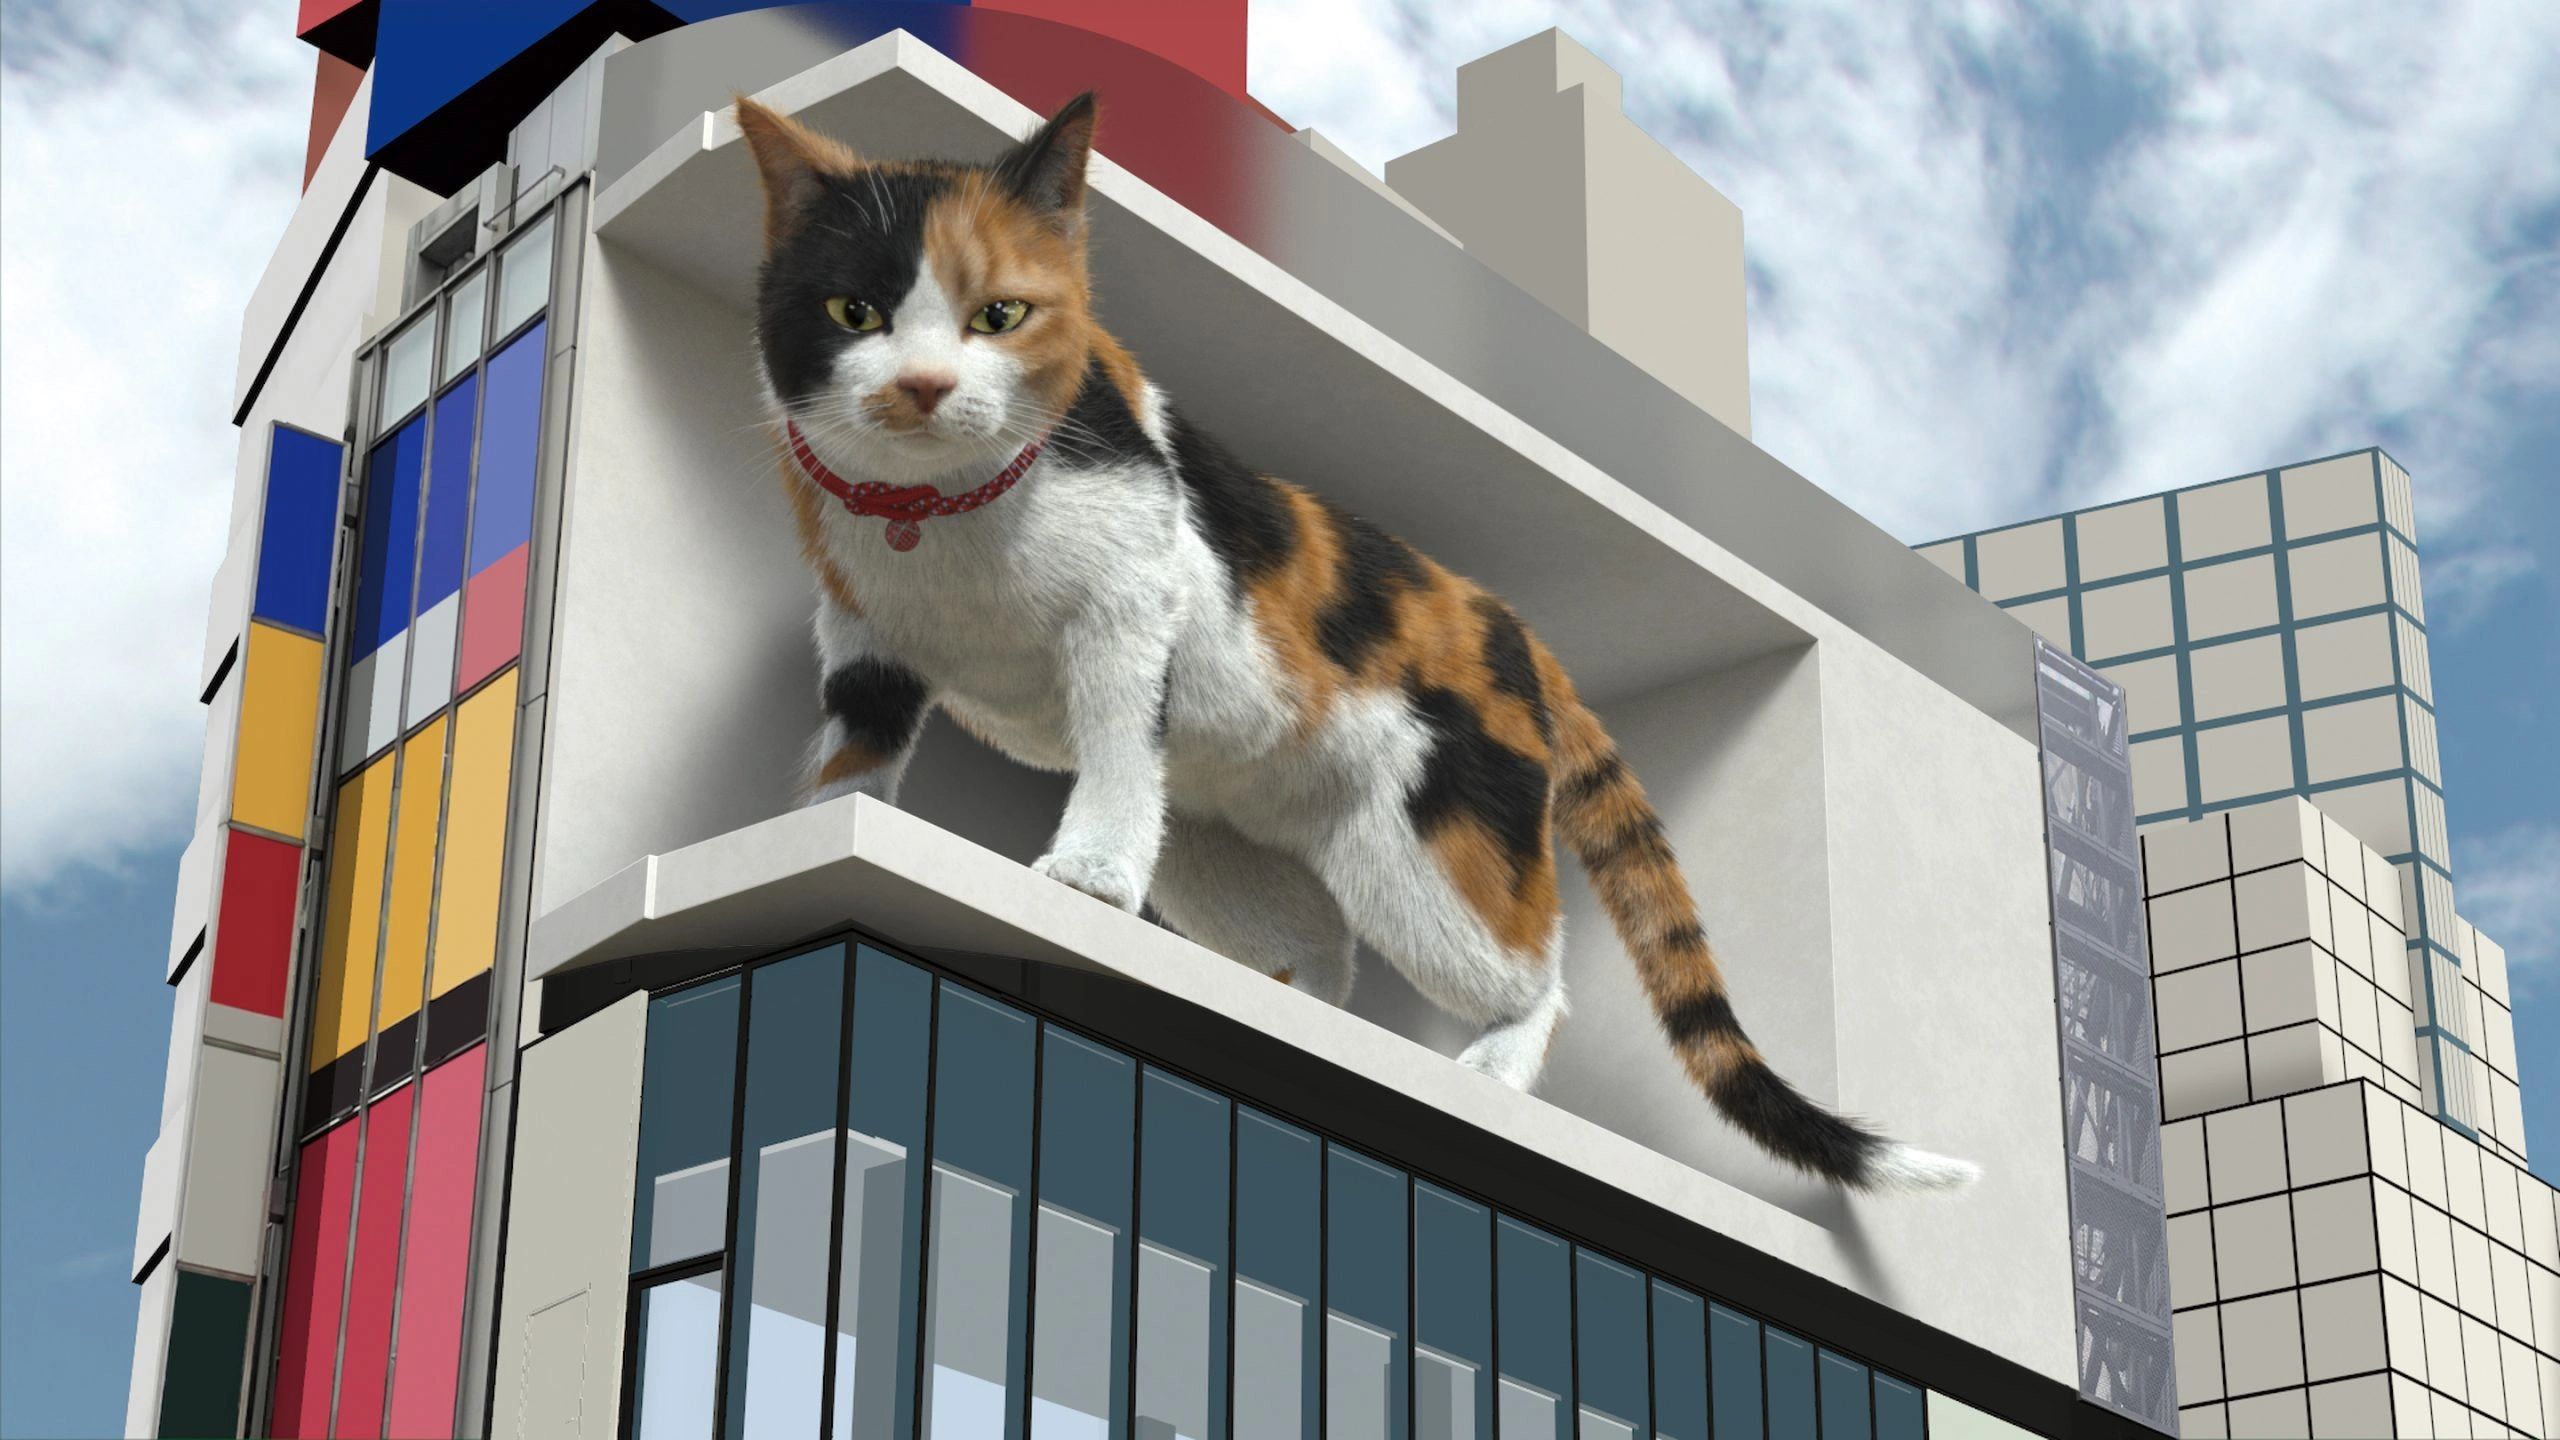 Shinjuku 3D Billboard In Tokyo-Immersive 3D Cat & More Examples